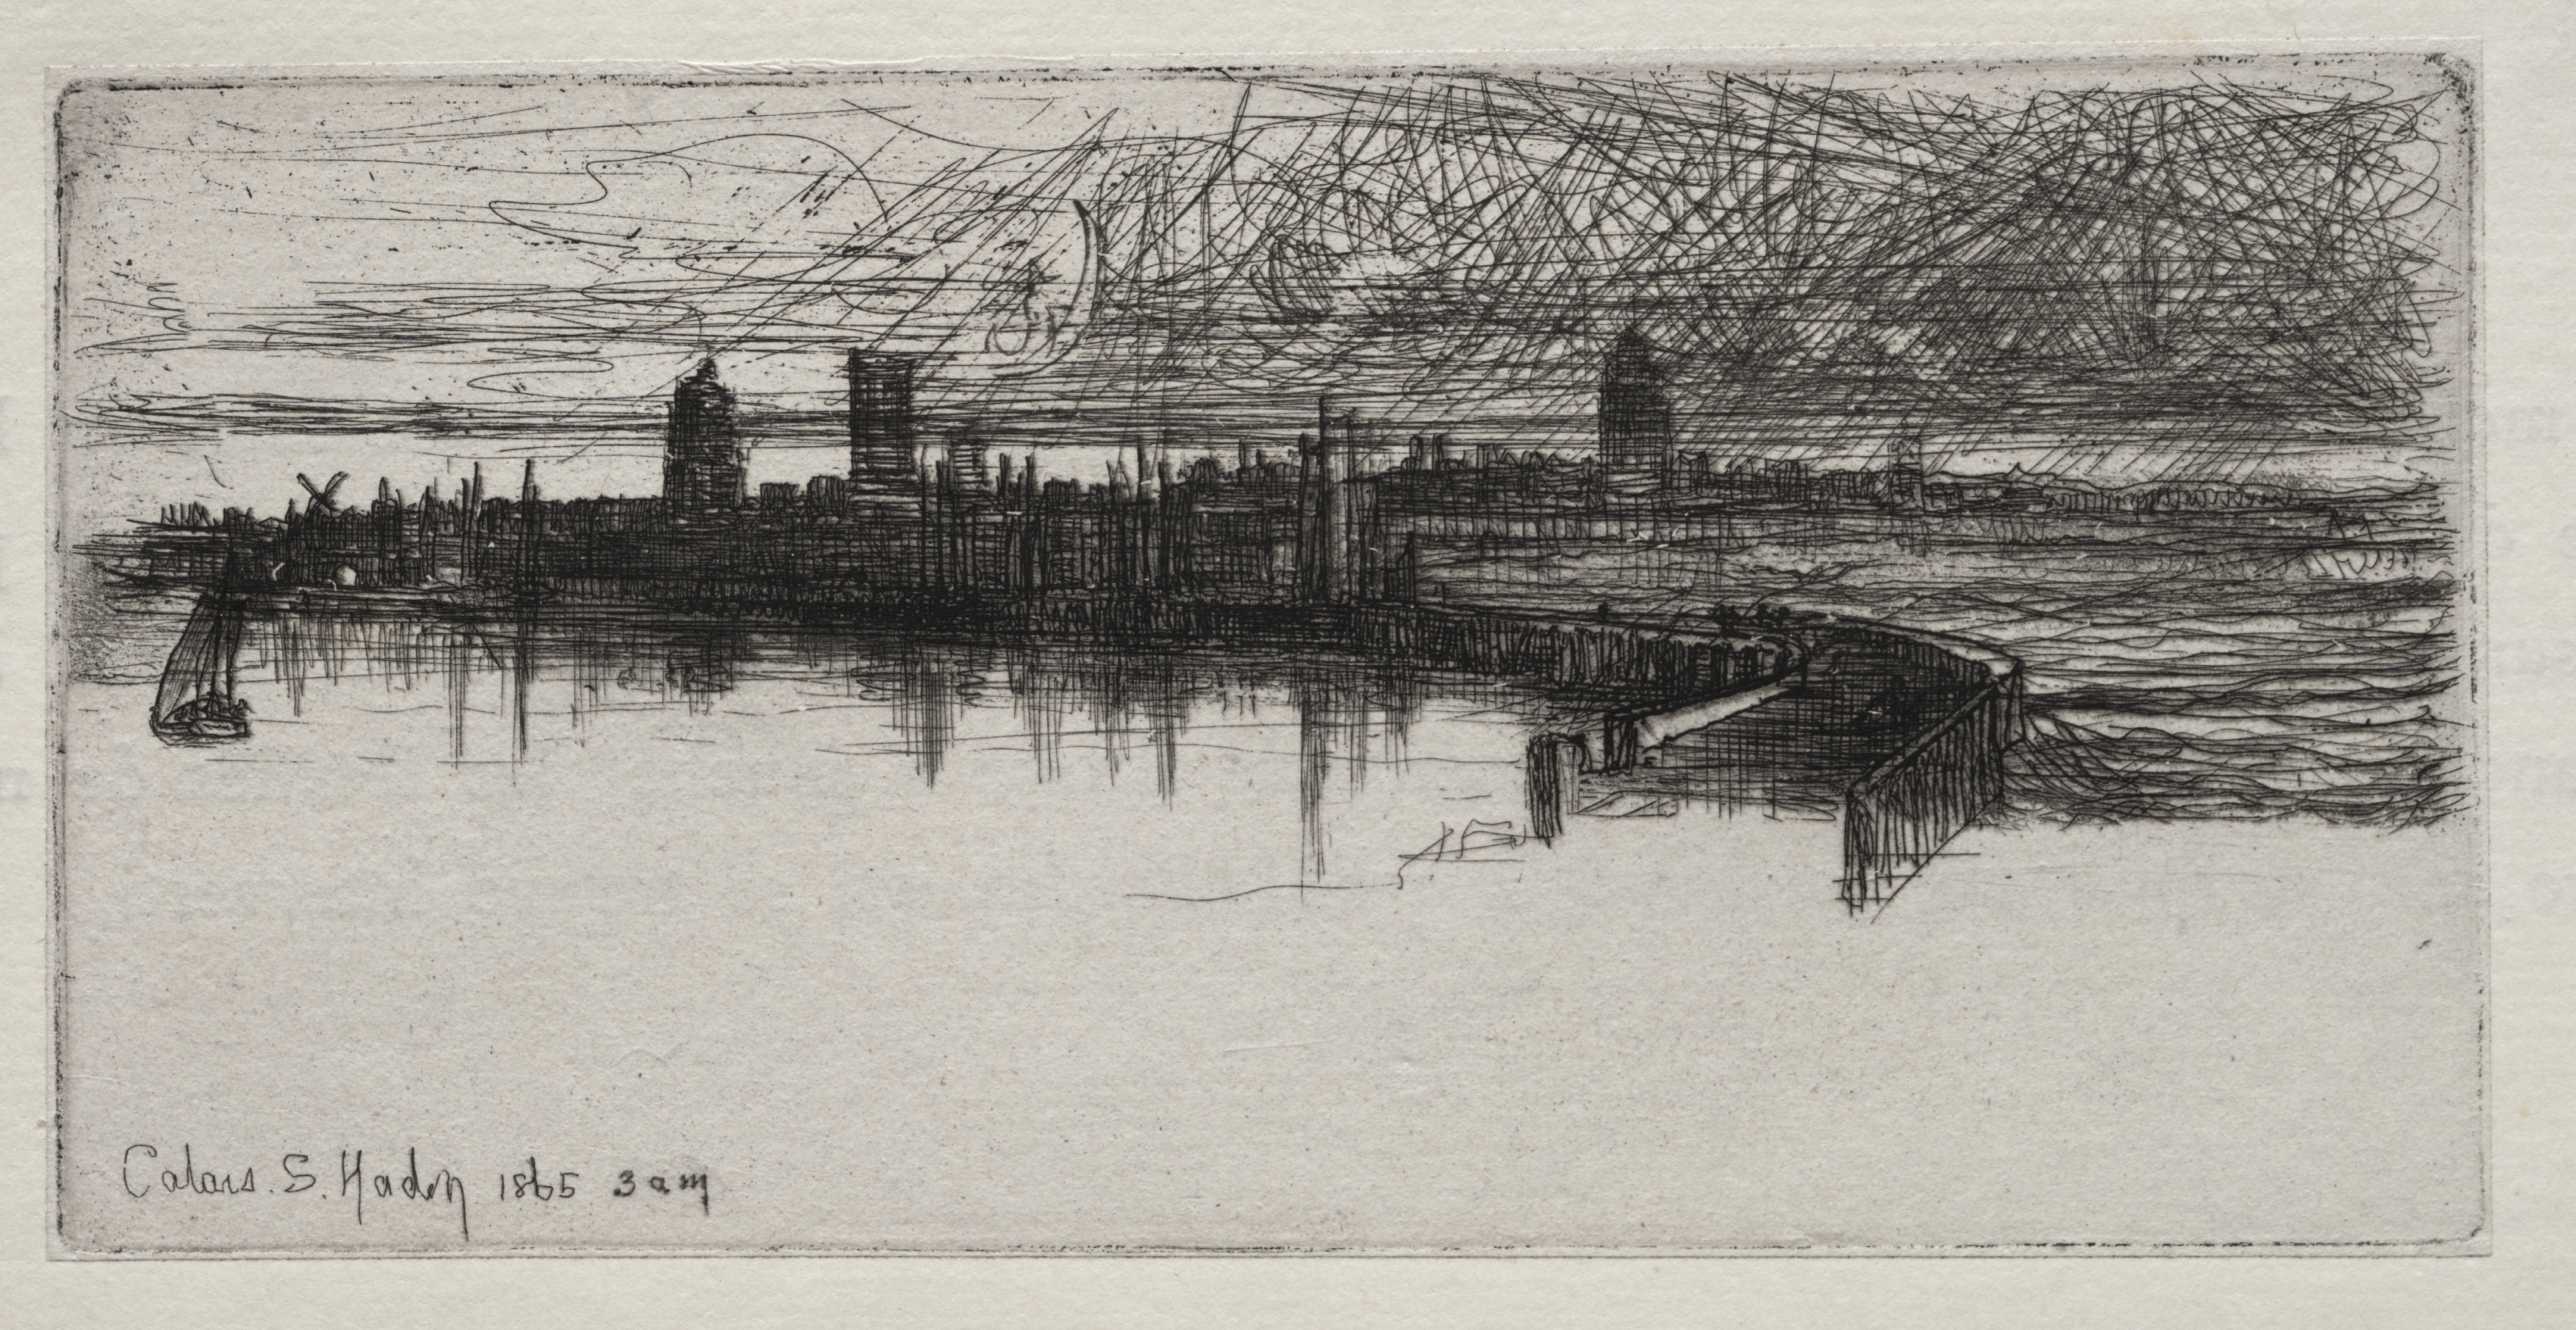 Little Calais Pier, 1865, 3 A.M.